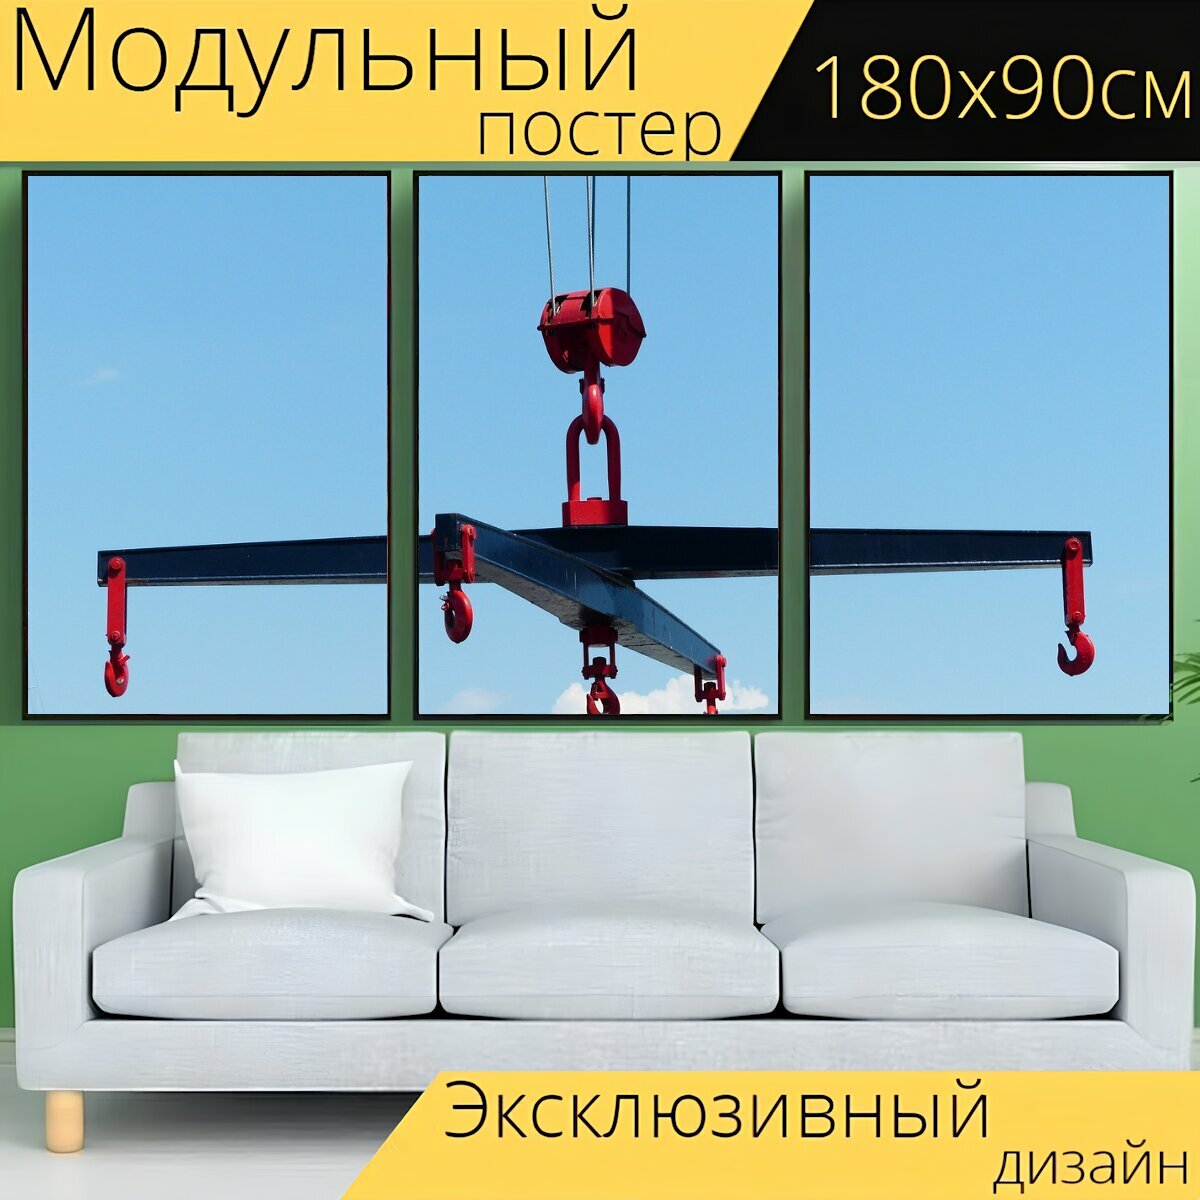 Модульный постер "Крест траверс, кран, загрузить стеклоподъёмника" 180 x 90 см. для интерьера